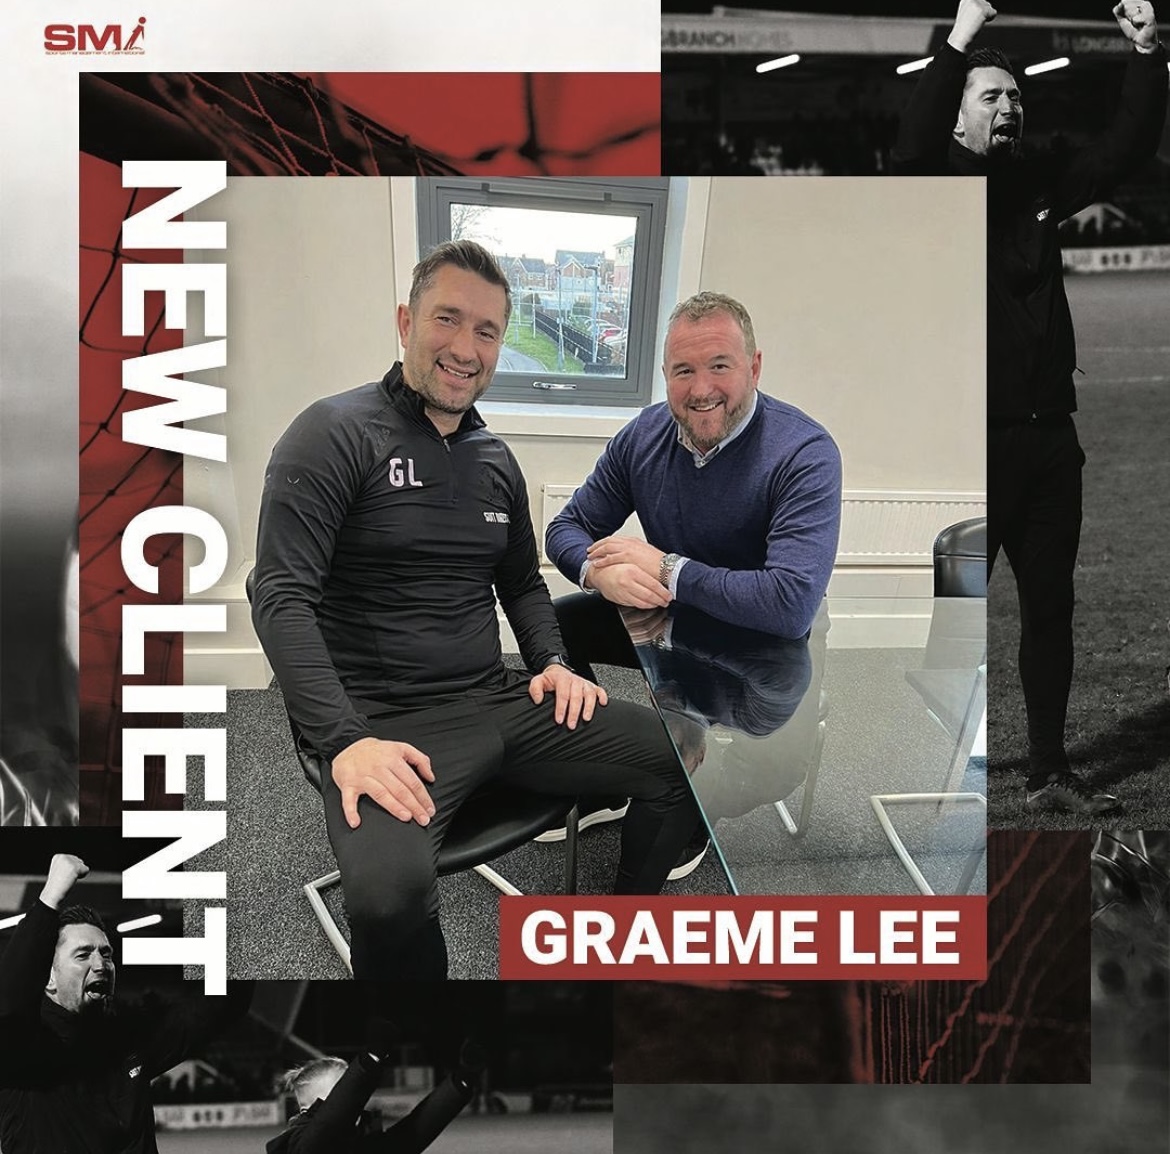 New Client Graeme Lee